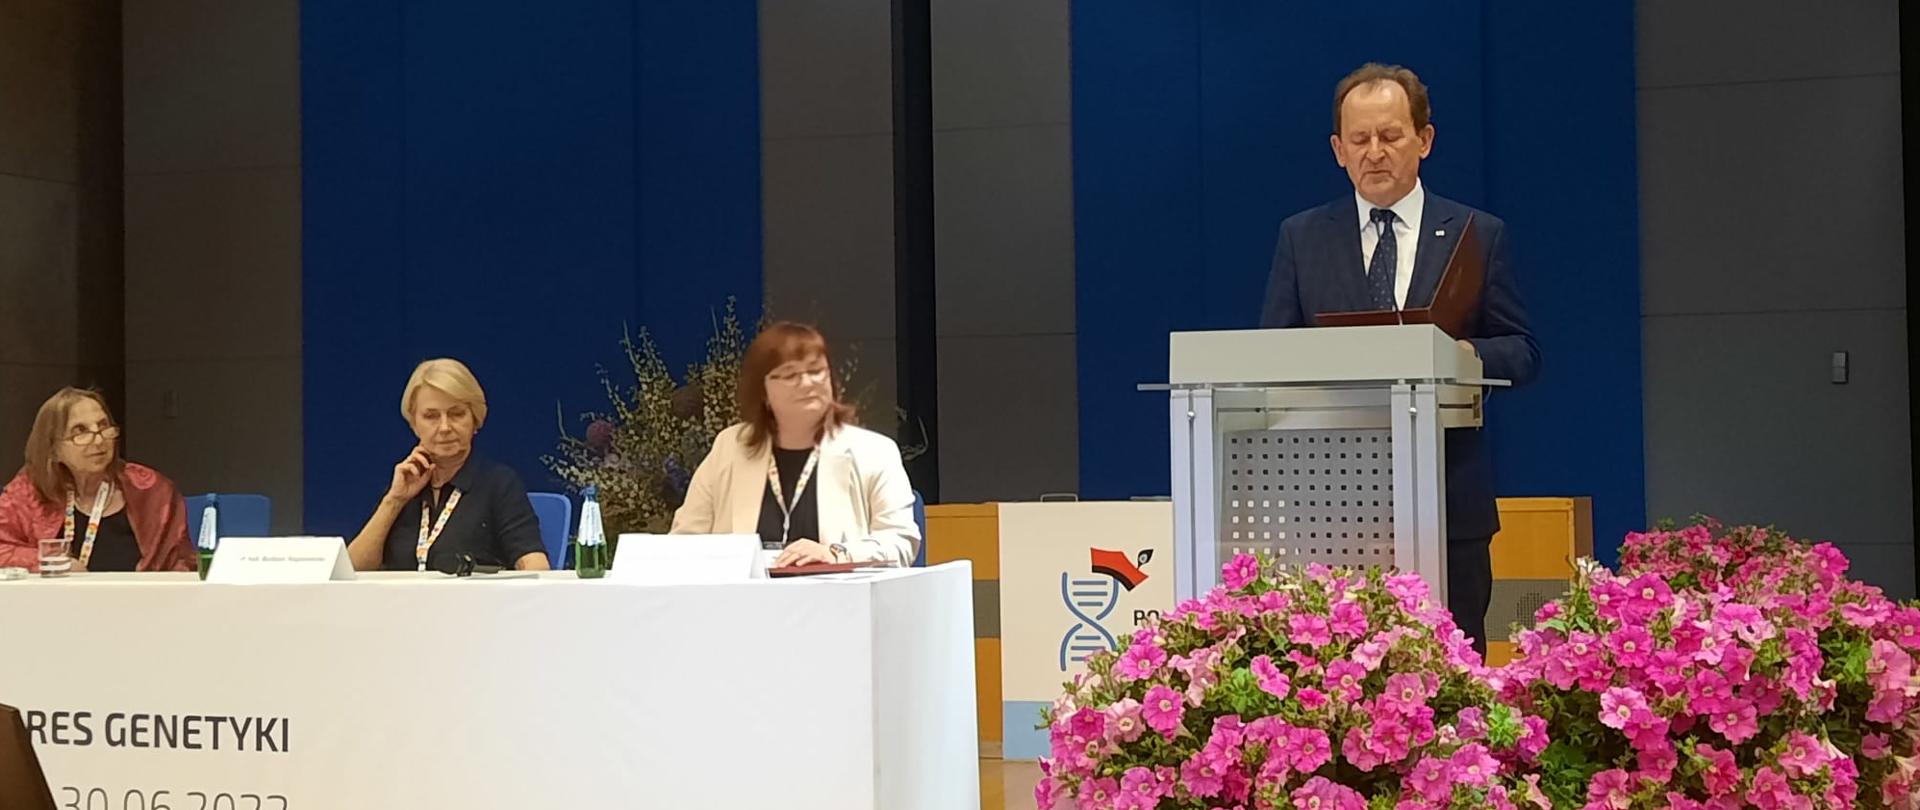 Minister Bernacki stoi na mównicy i mówi do mikrofonu, obok bukiety różowych kwiatów i podwyższenie, przy którym siedzą trzy kobiety.